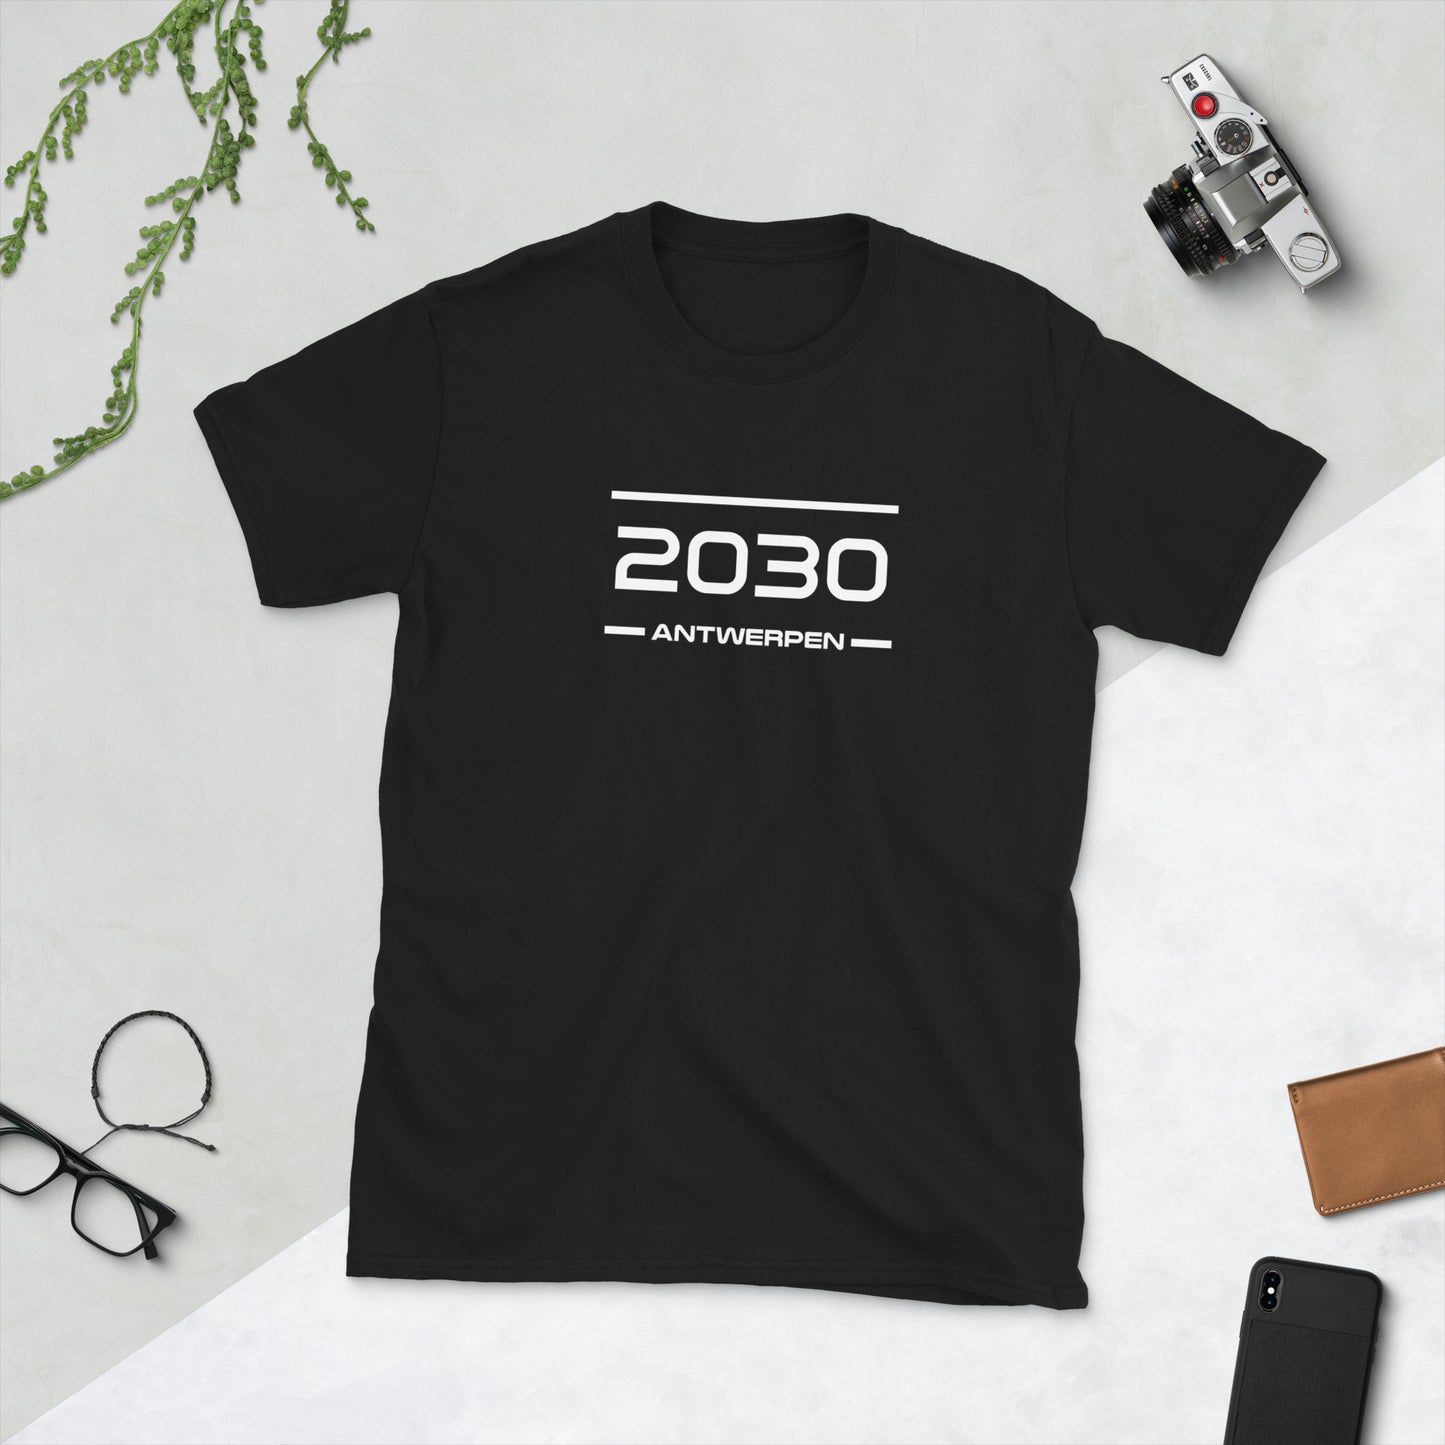 Tshirt - 2030 - Antwerpen